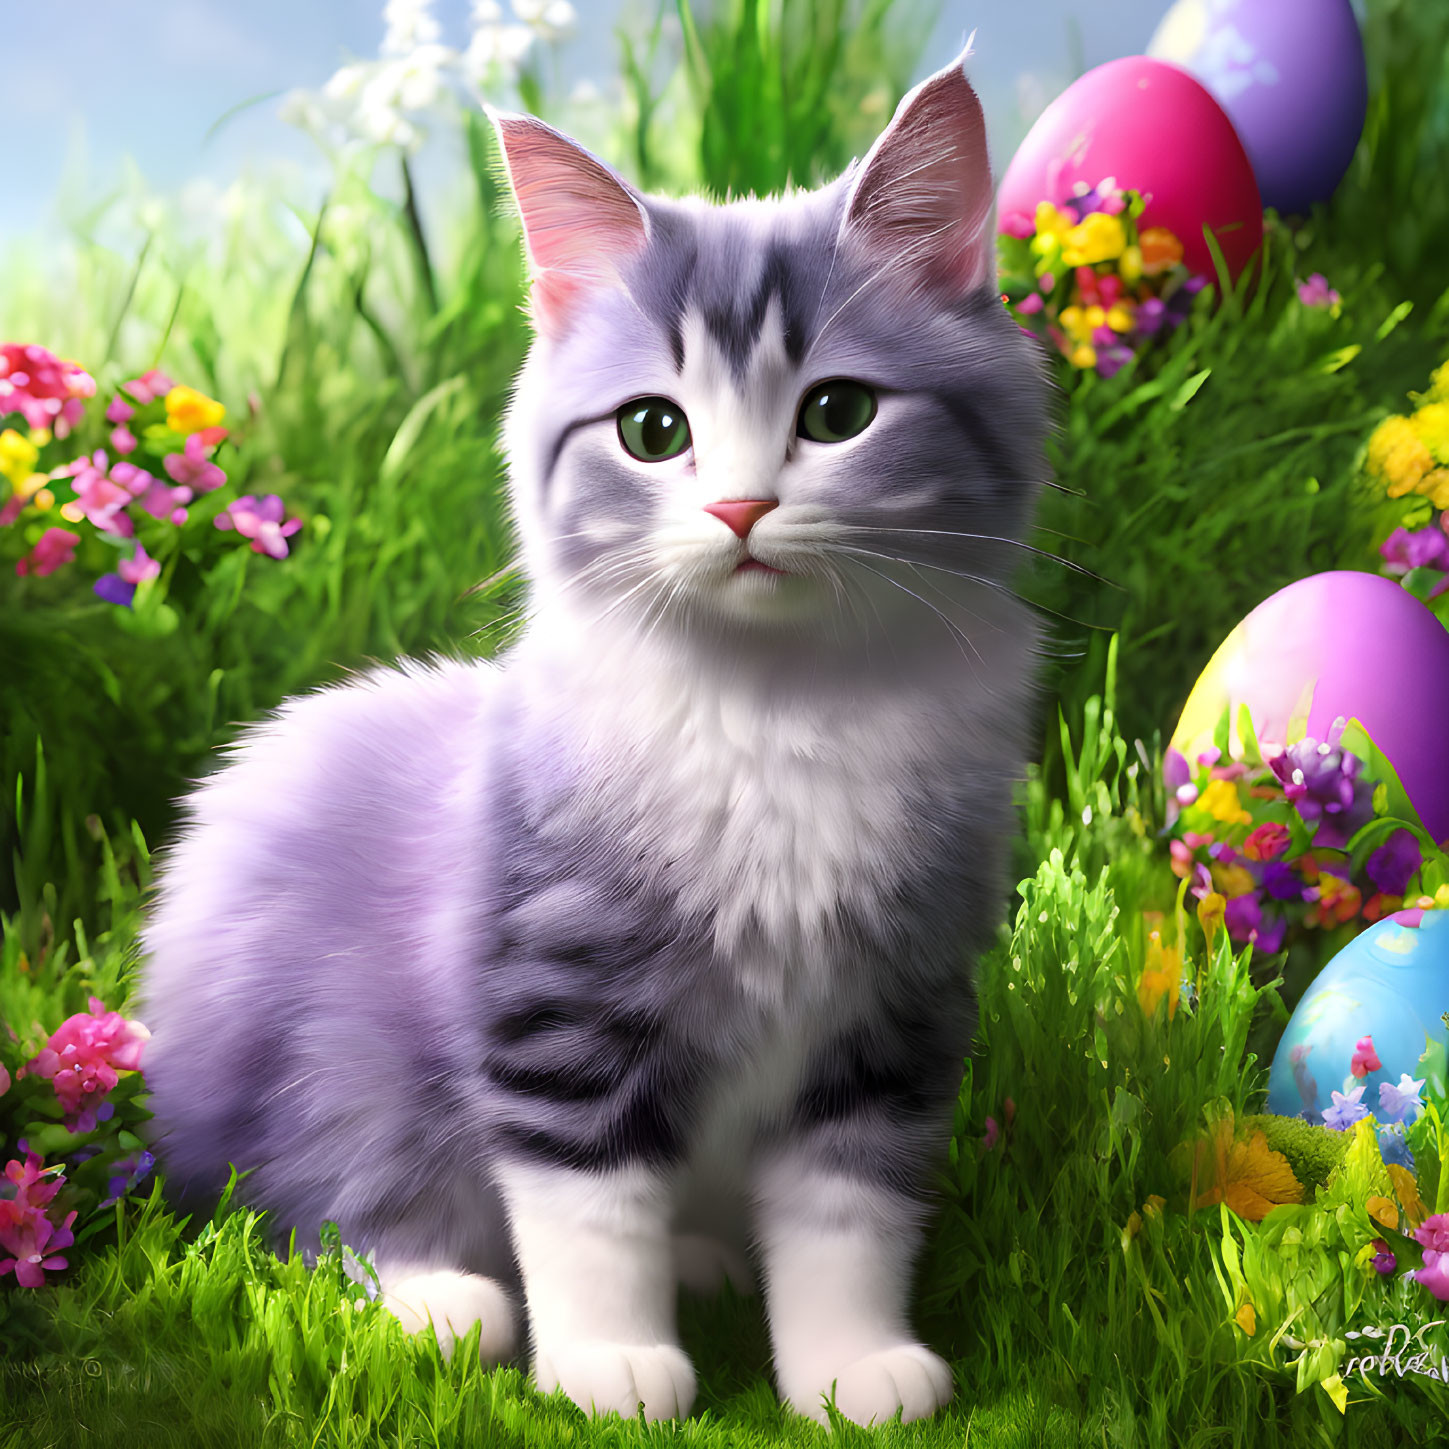 Easter, little kitten